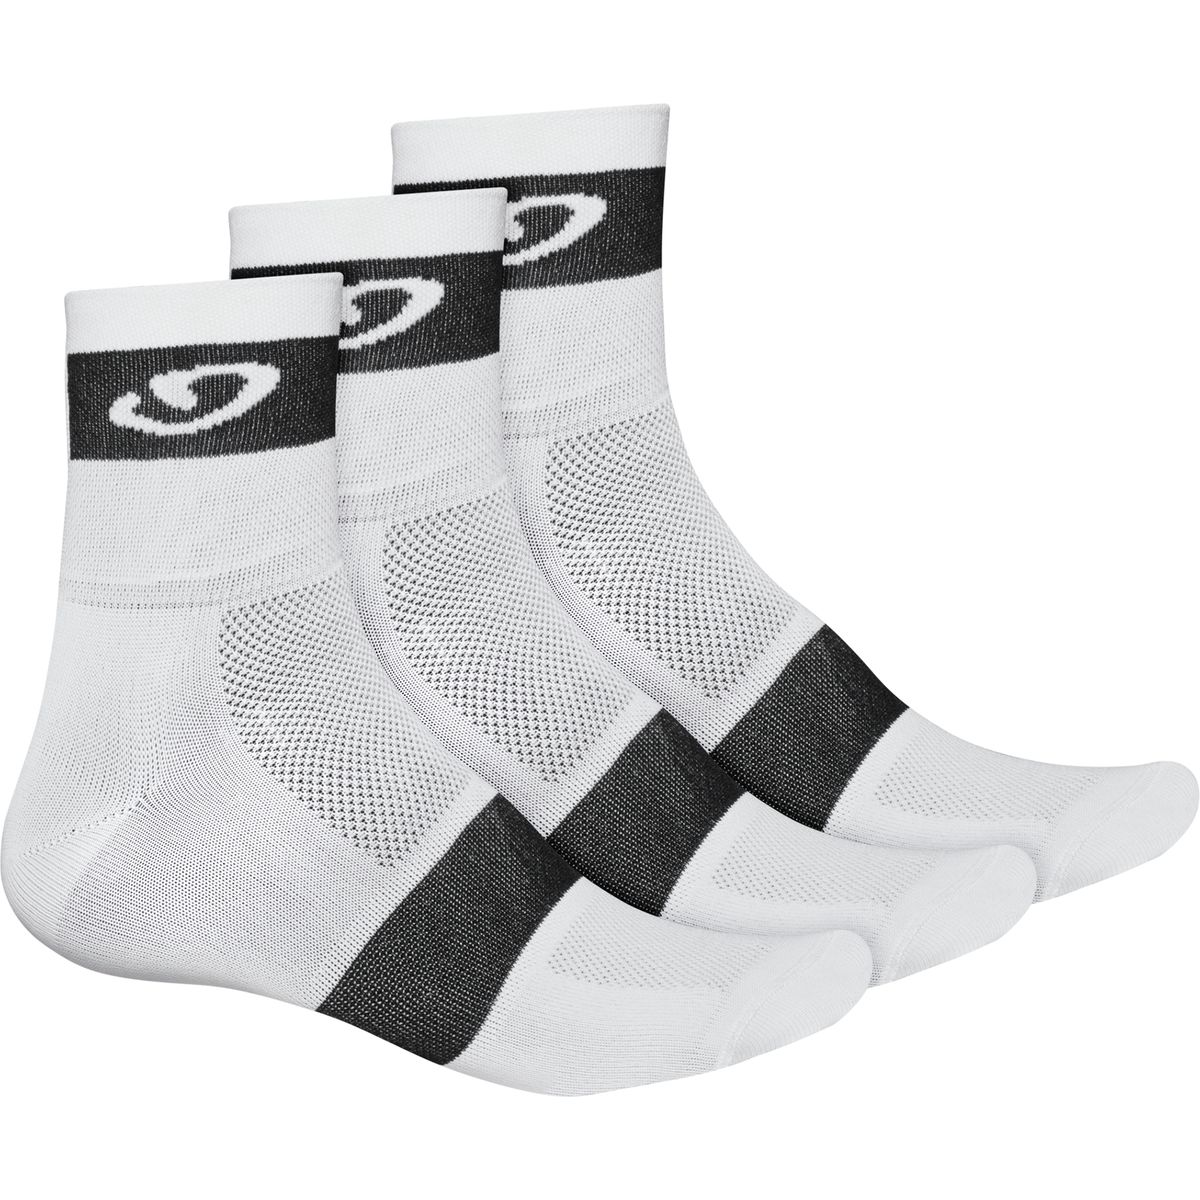 Giro Comp Racer Socks - 3-Pack - Men's